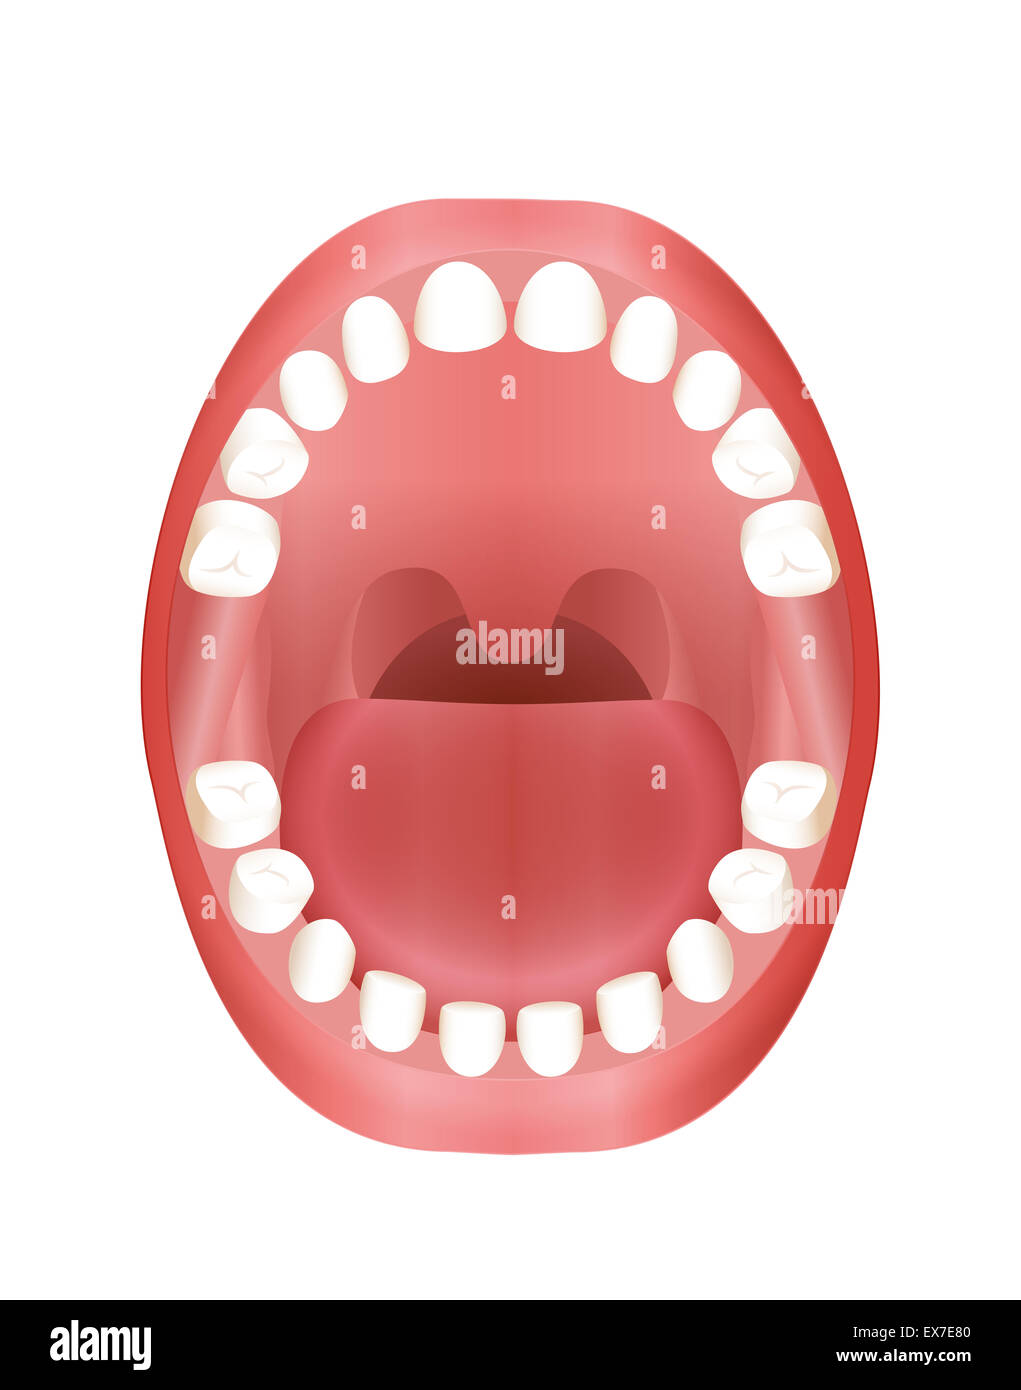 Denti primari - bambini modello bocca con il mascellare superiore e inferiore e i suoi venti denti temporanei. Foto Stock